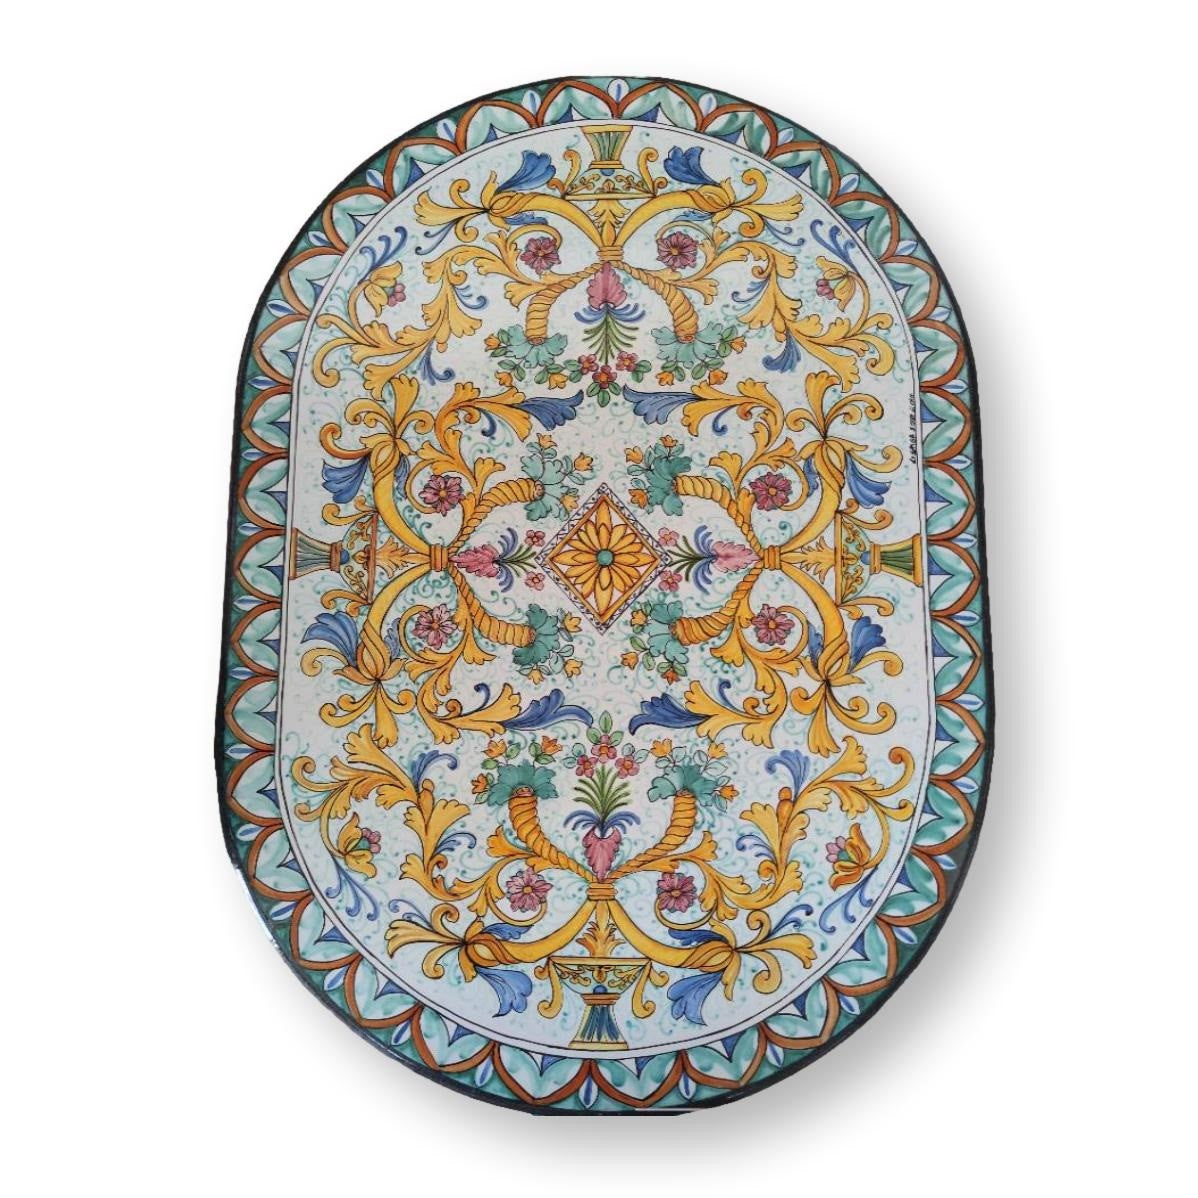 Tavolo in Pietra lavica ovale - Ornamenti stile antico in vari colori